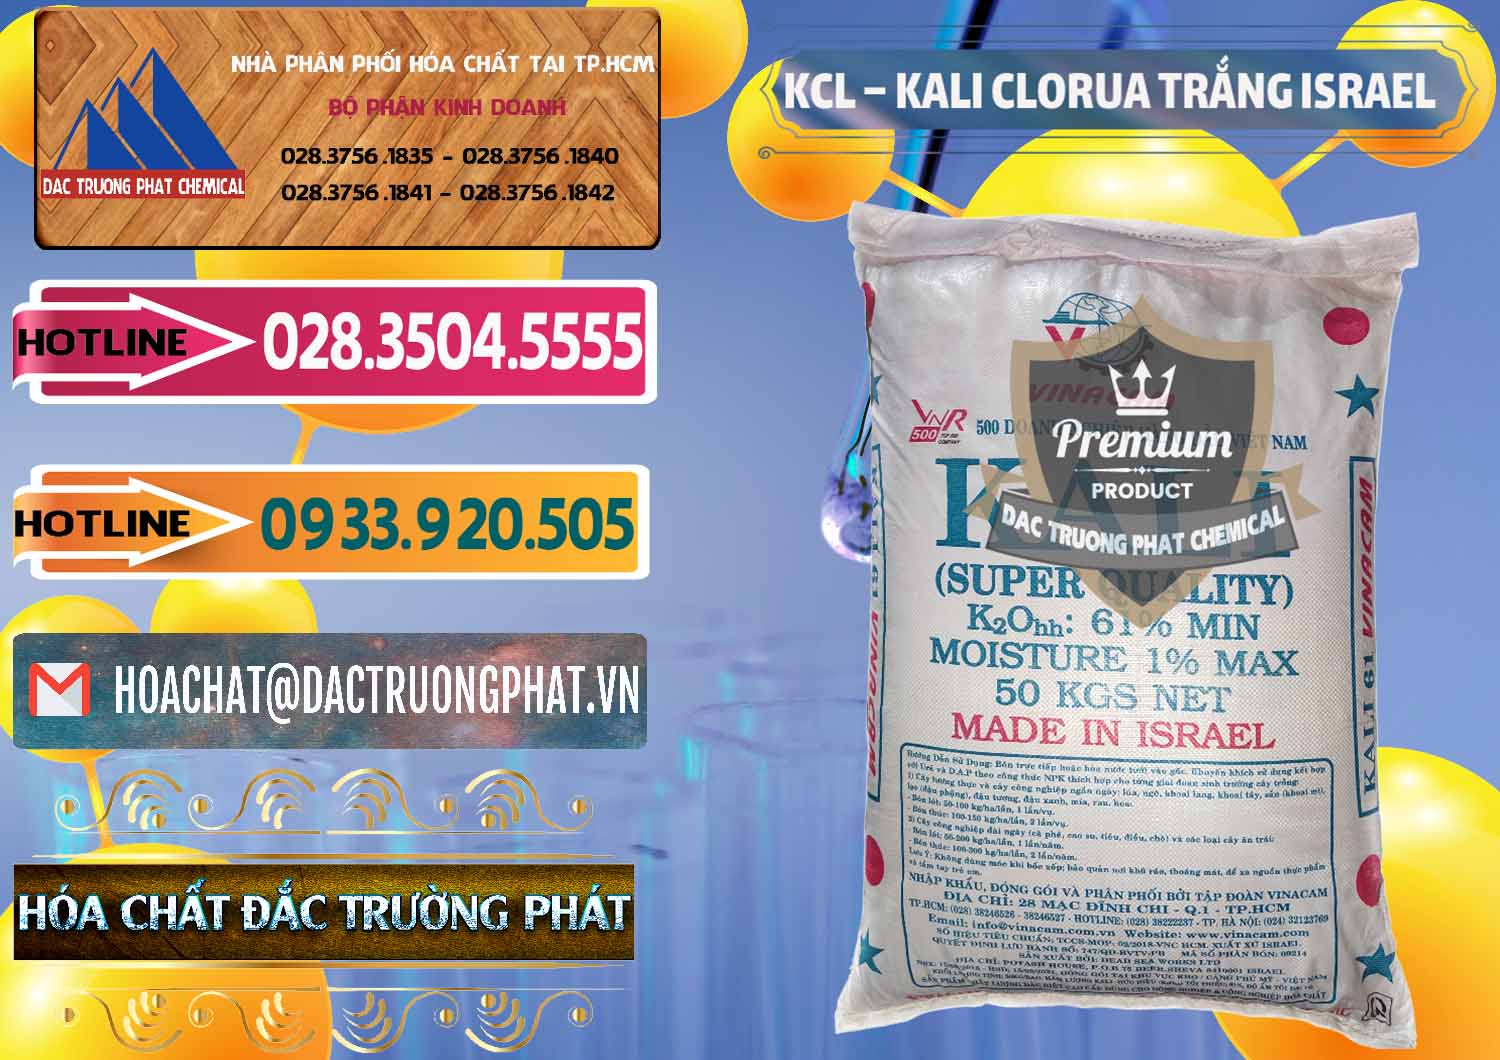 Cty bán - cung cấp KCL – Kali Clorua Trắng Israel - 0087 - Cty cung cấp và kinh doanh hóa chất tại TP.HCM - dactruongphat.vn